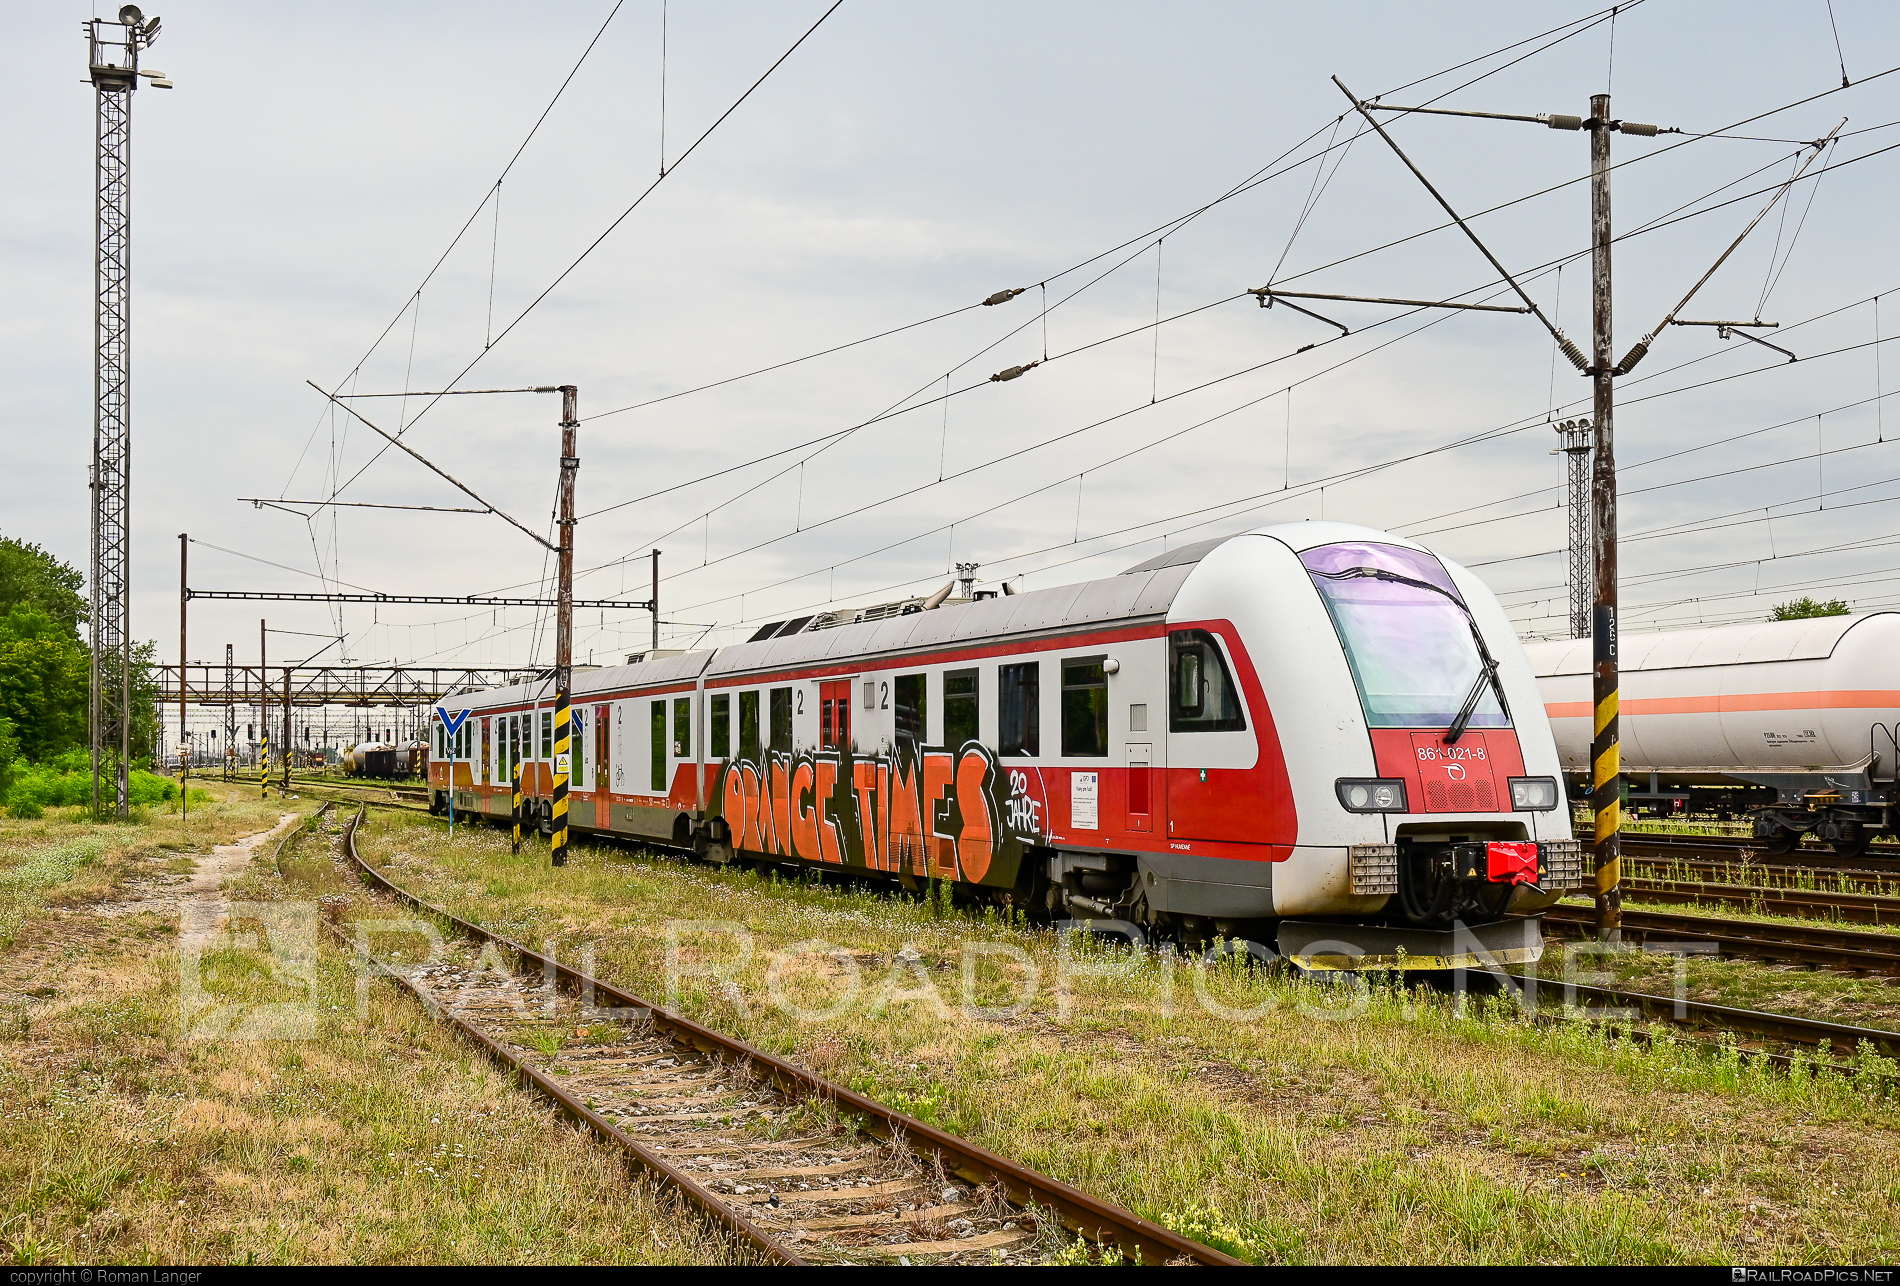 ŽOS Vrútky Class 861.0 - 861 021-8 operated by Železničná Spoločnost' Slovensko, a.s. #ZeleznicnaSpolocnostSlovensko #dunihlav #graffiti #husenica #zosvrutky #zosvrutky861 #zosvrutky8610 #zssk #zssk861 #zssk8610